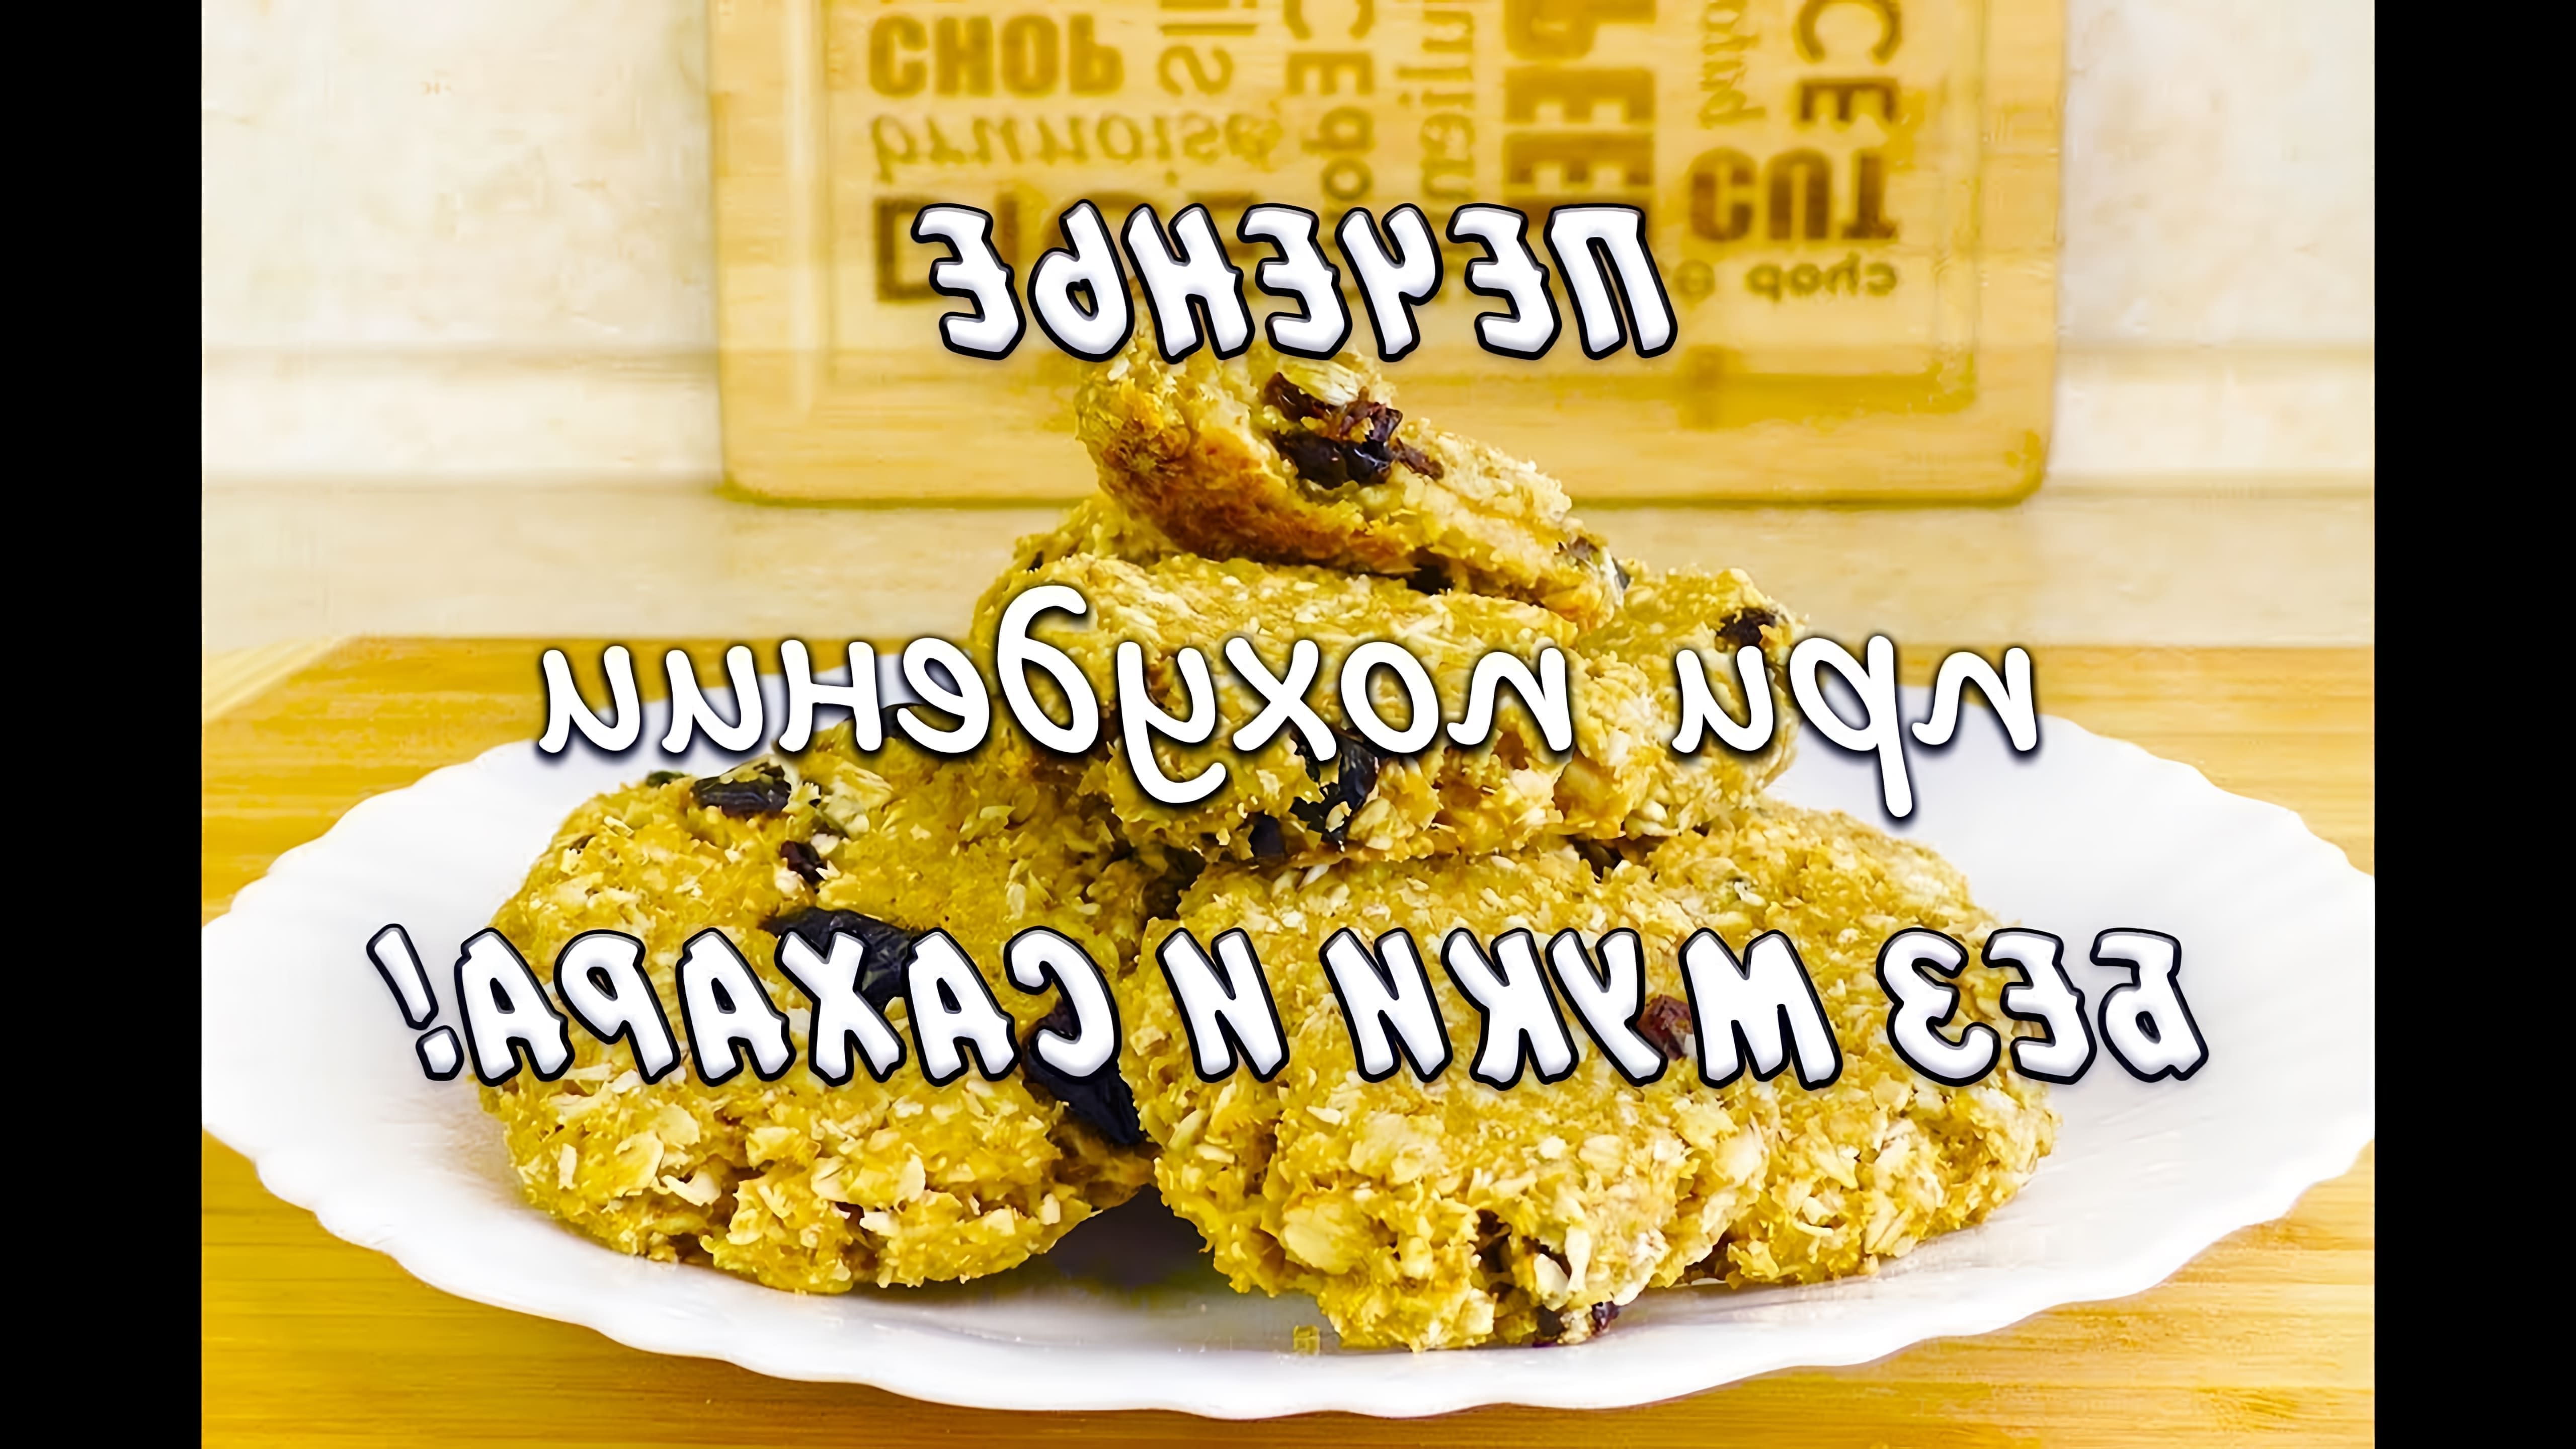 В этом видео девушка по имени Мария Миронович делится рецептом овсяного печенья без муки и сахара, который она использовала для похудения на 43 кг